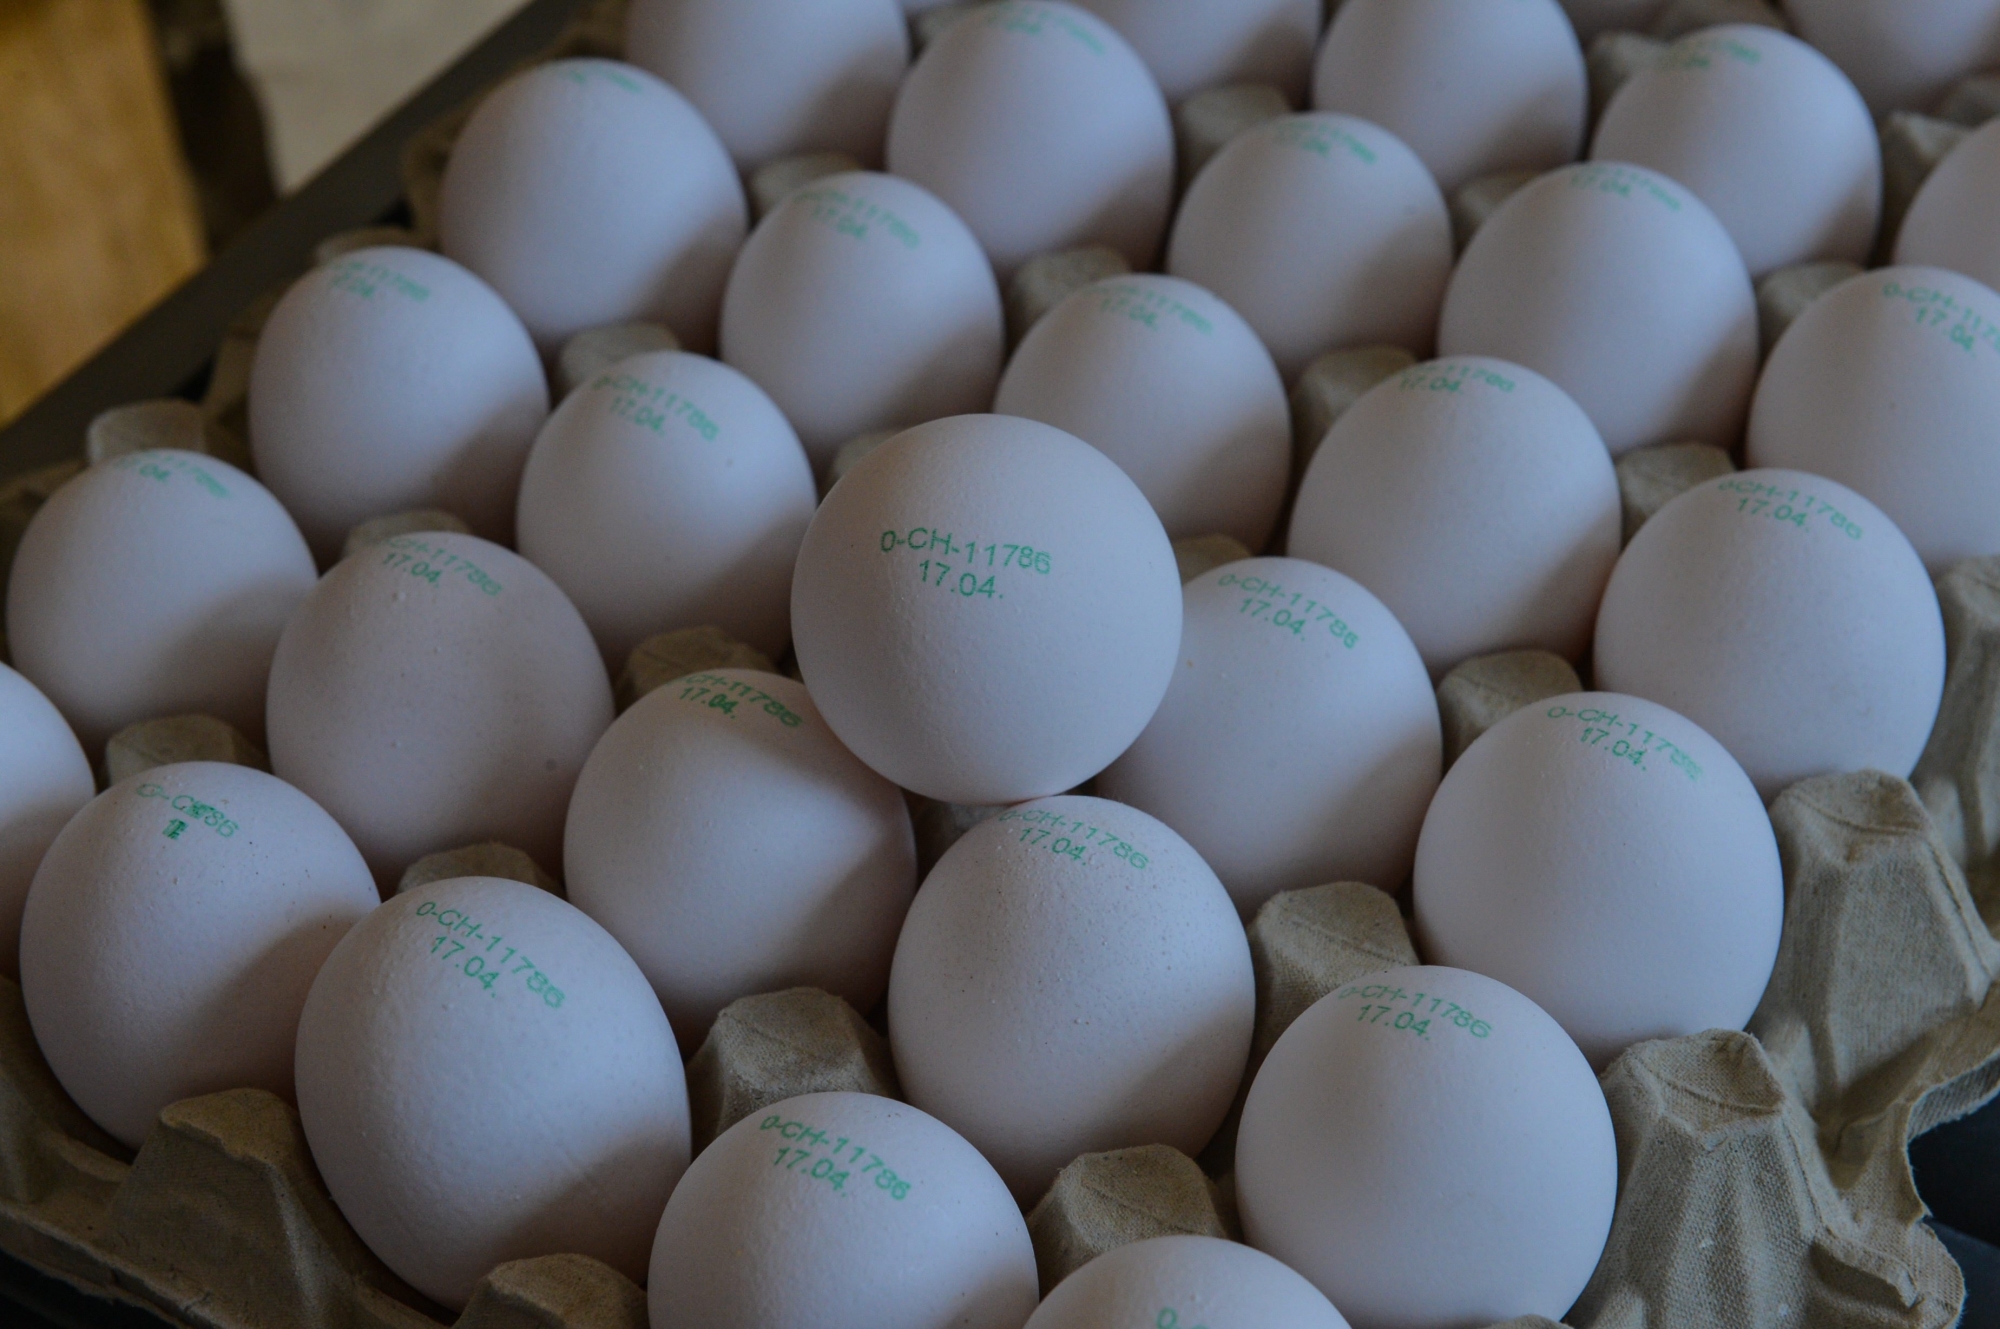 Le marché regorge d'œufs durant la période des vacances scolaires.